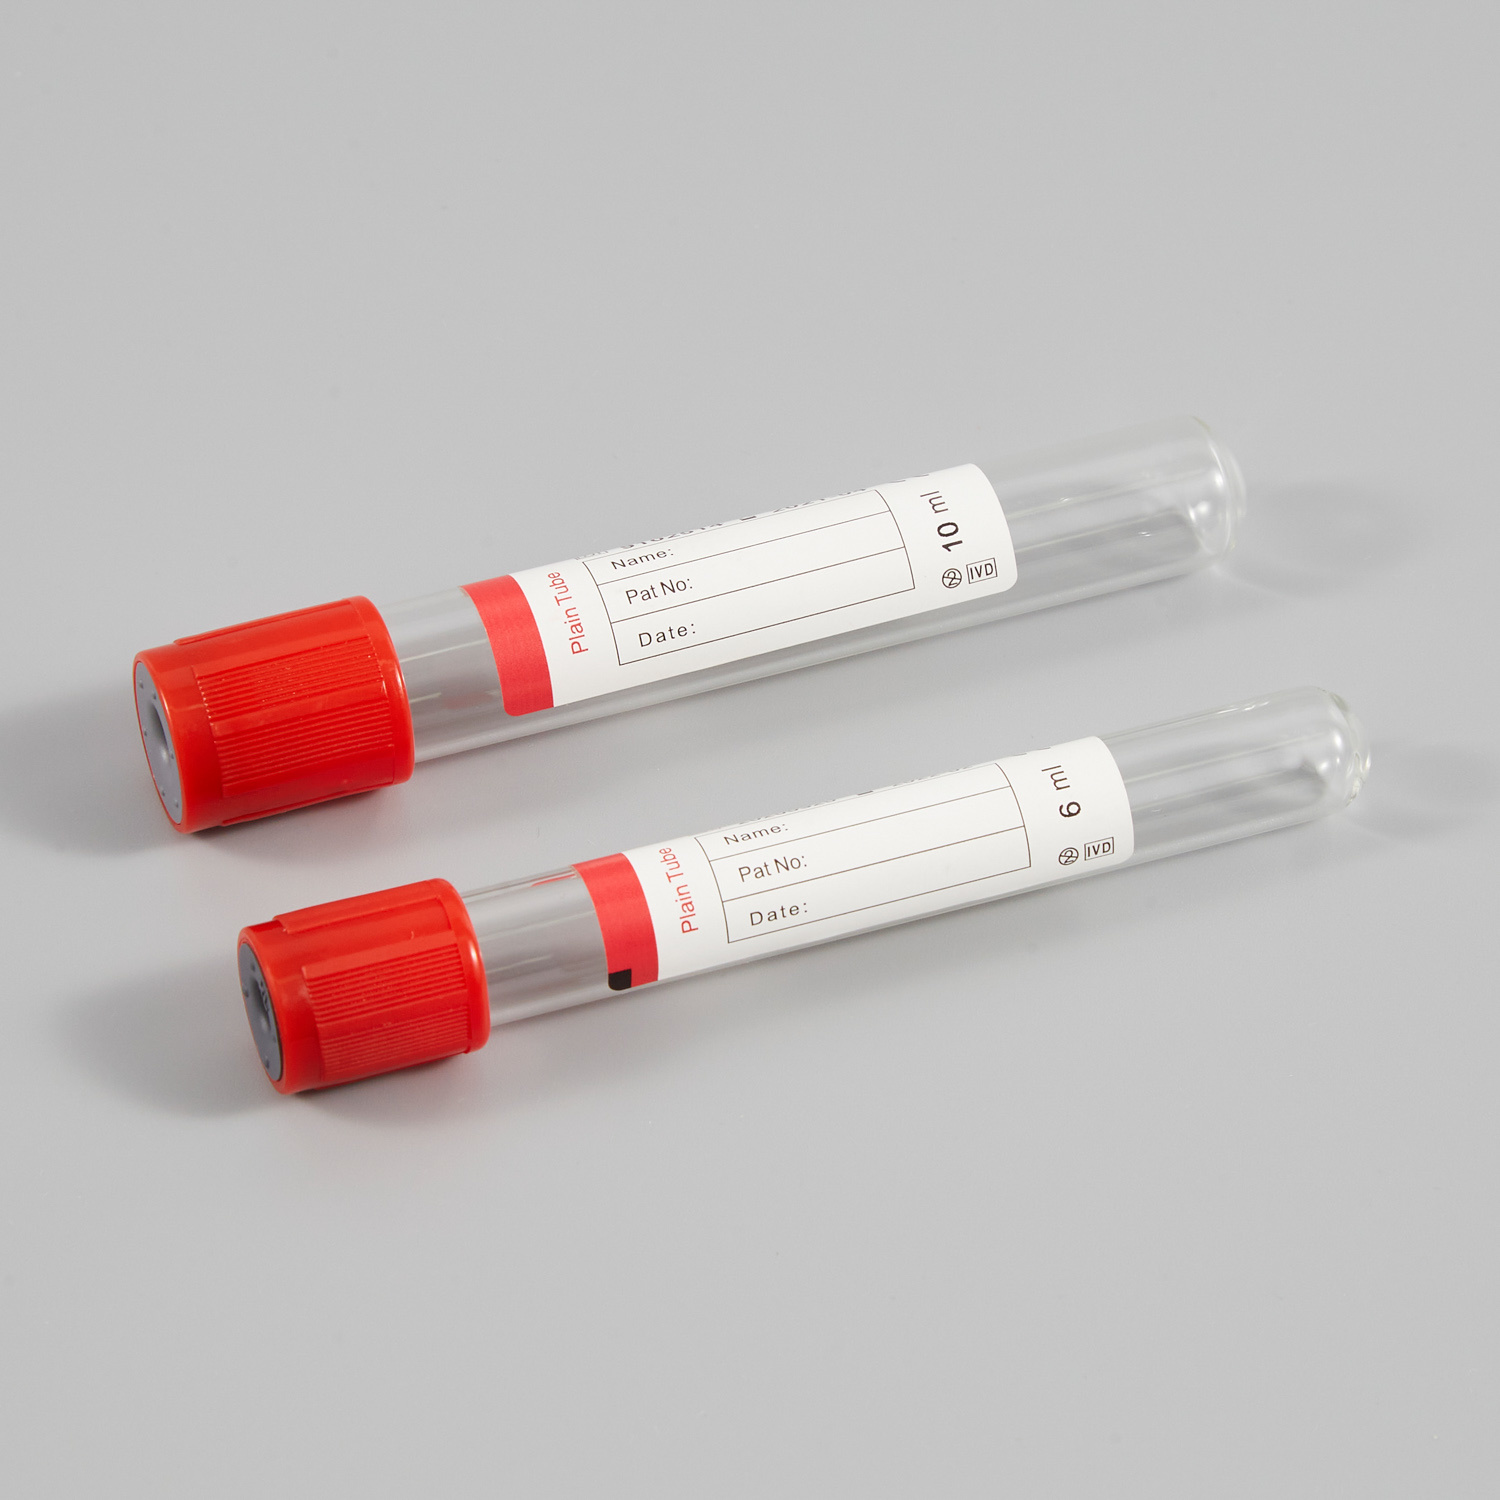 Engangs test blodvakuumrør uten tilsetningsstoff